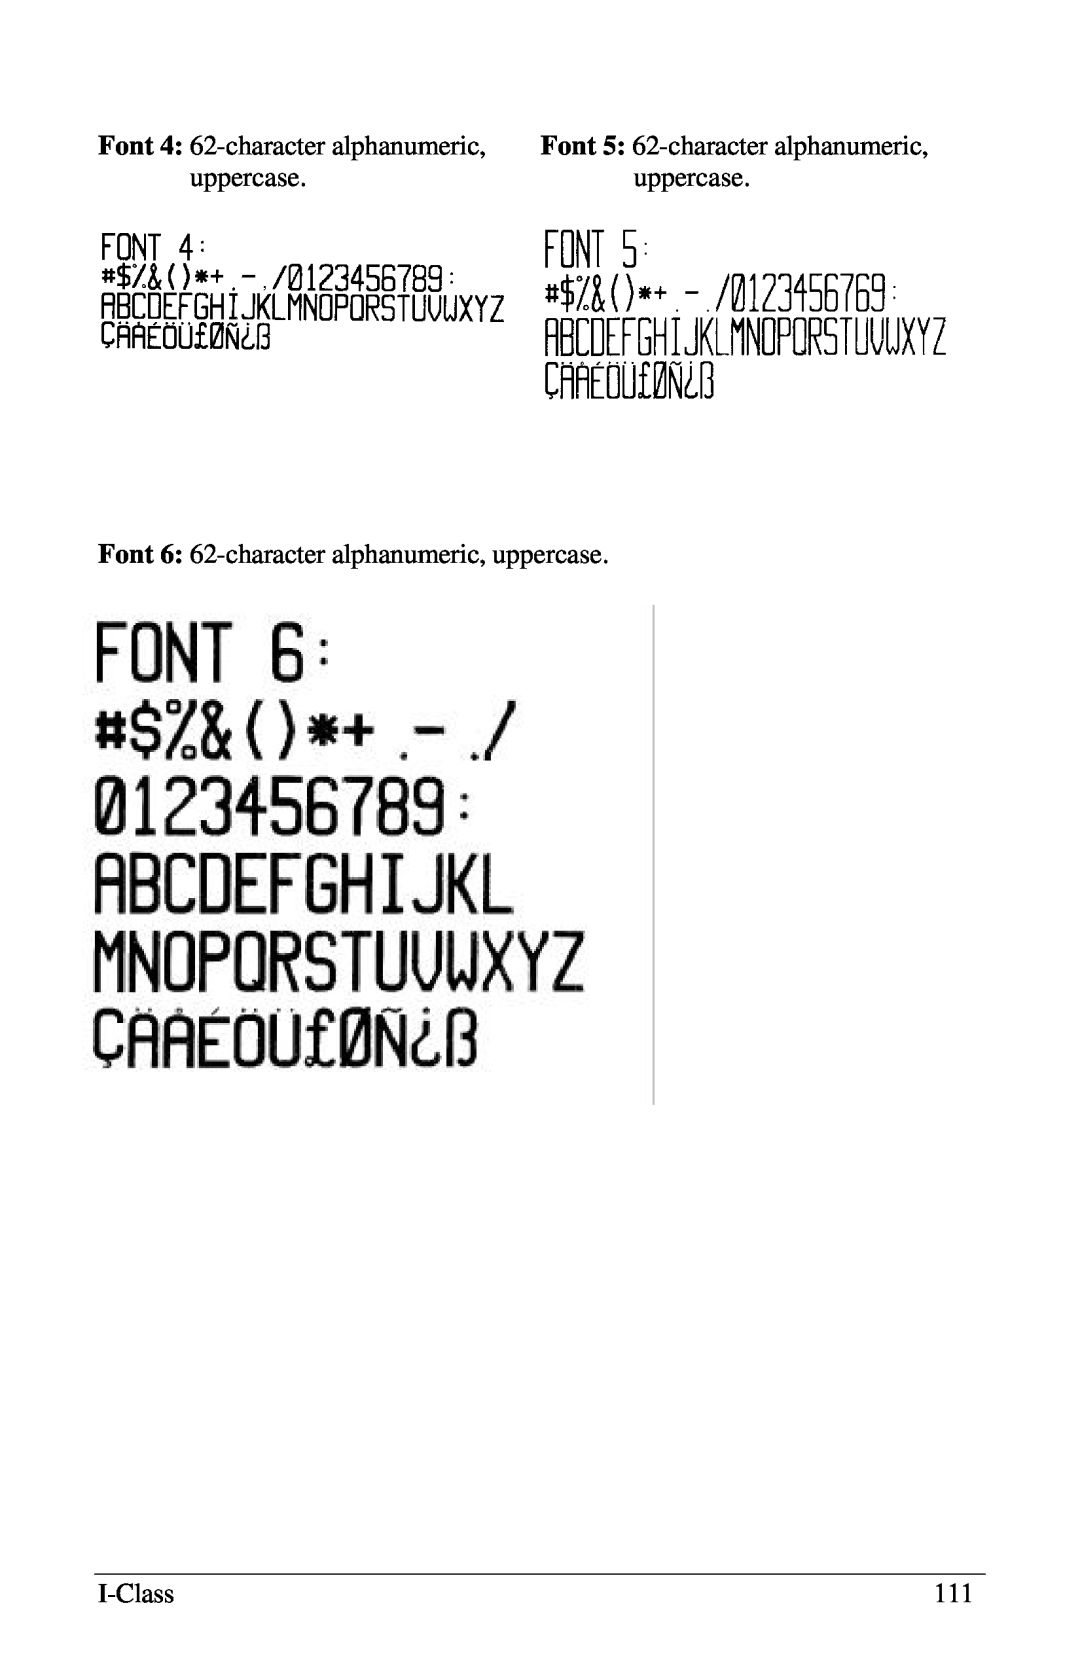 Xerox I Class manual Font 4: 62-characteralphanumeric, Font 5: 62-characteralphanumeric, uppercase, I-Class 